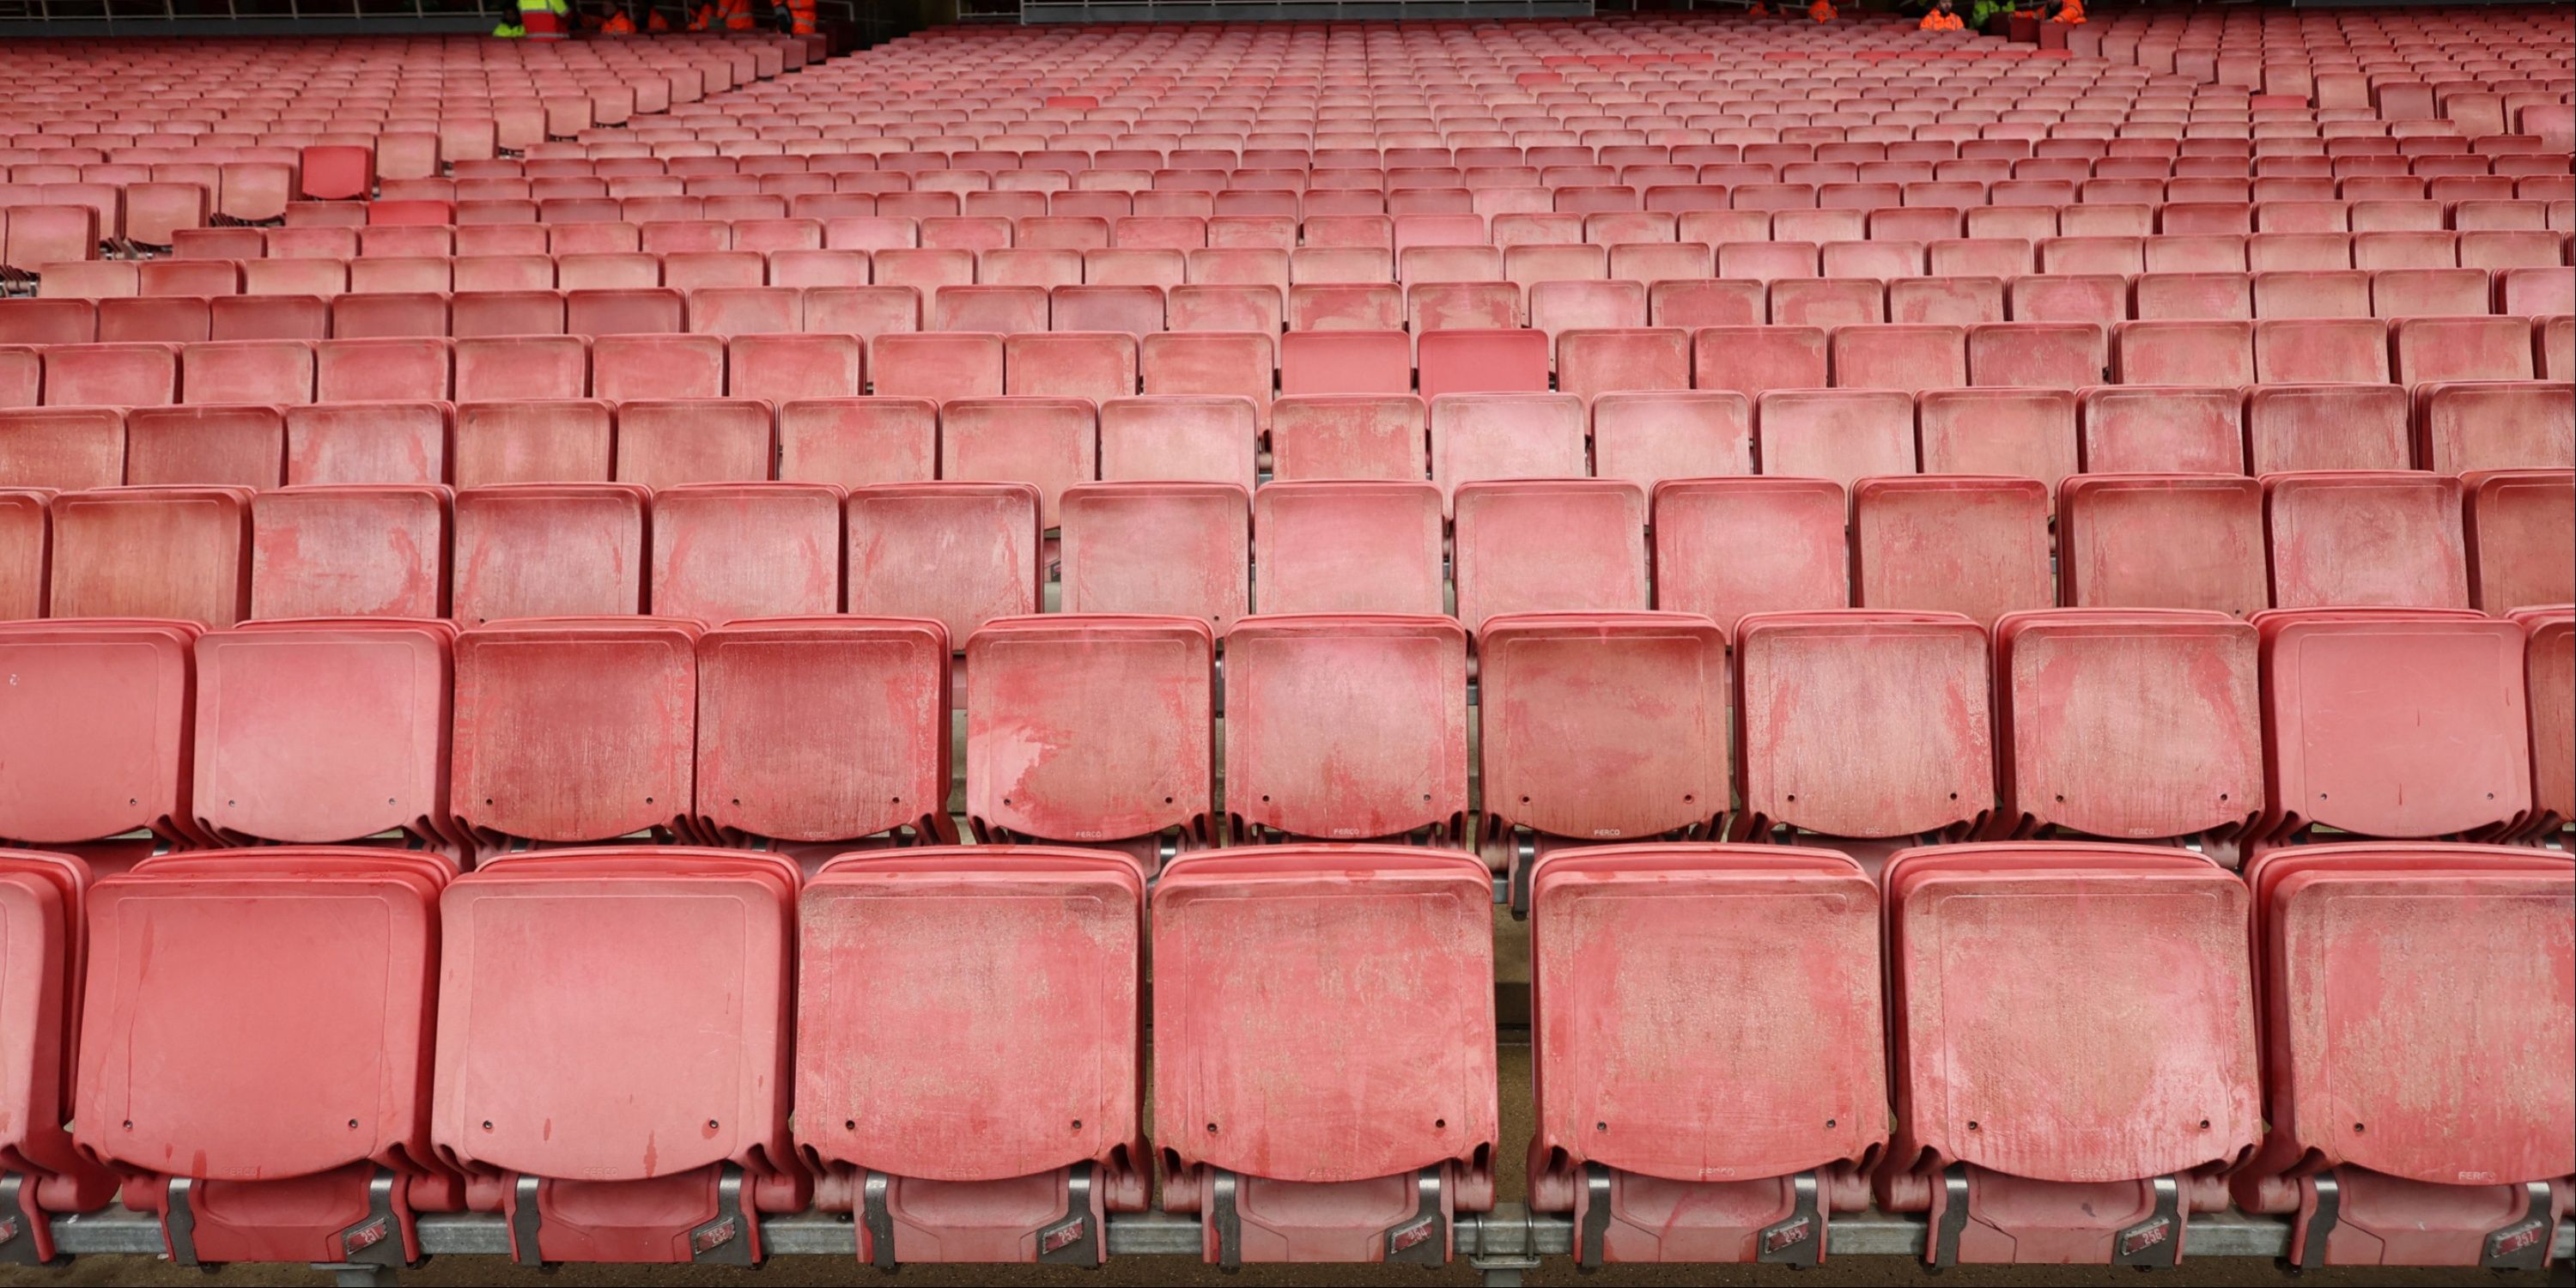 Premier League seats